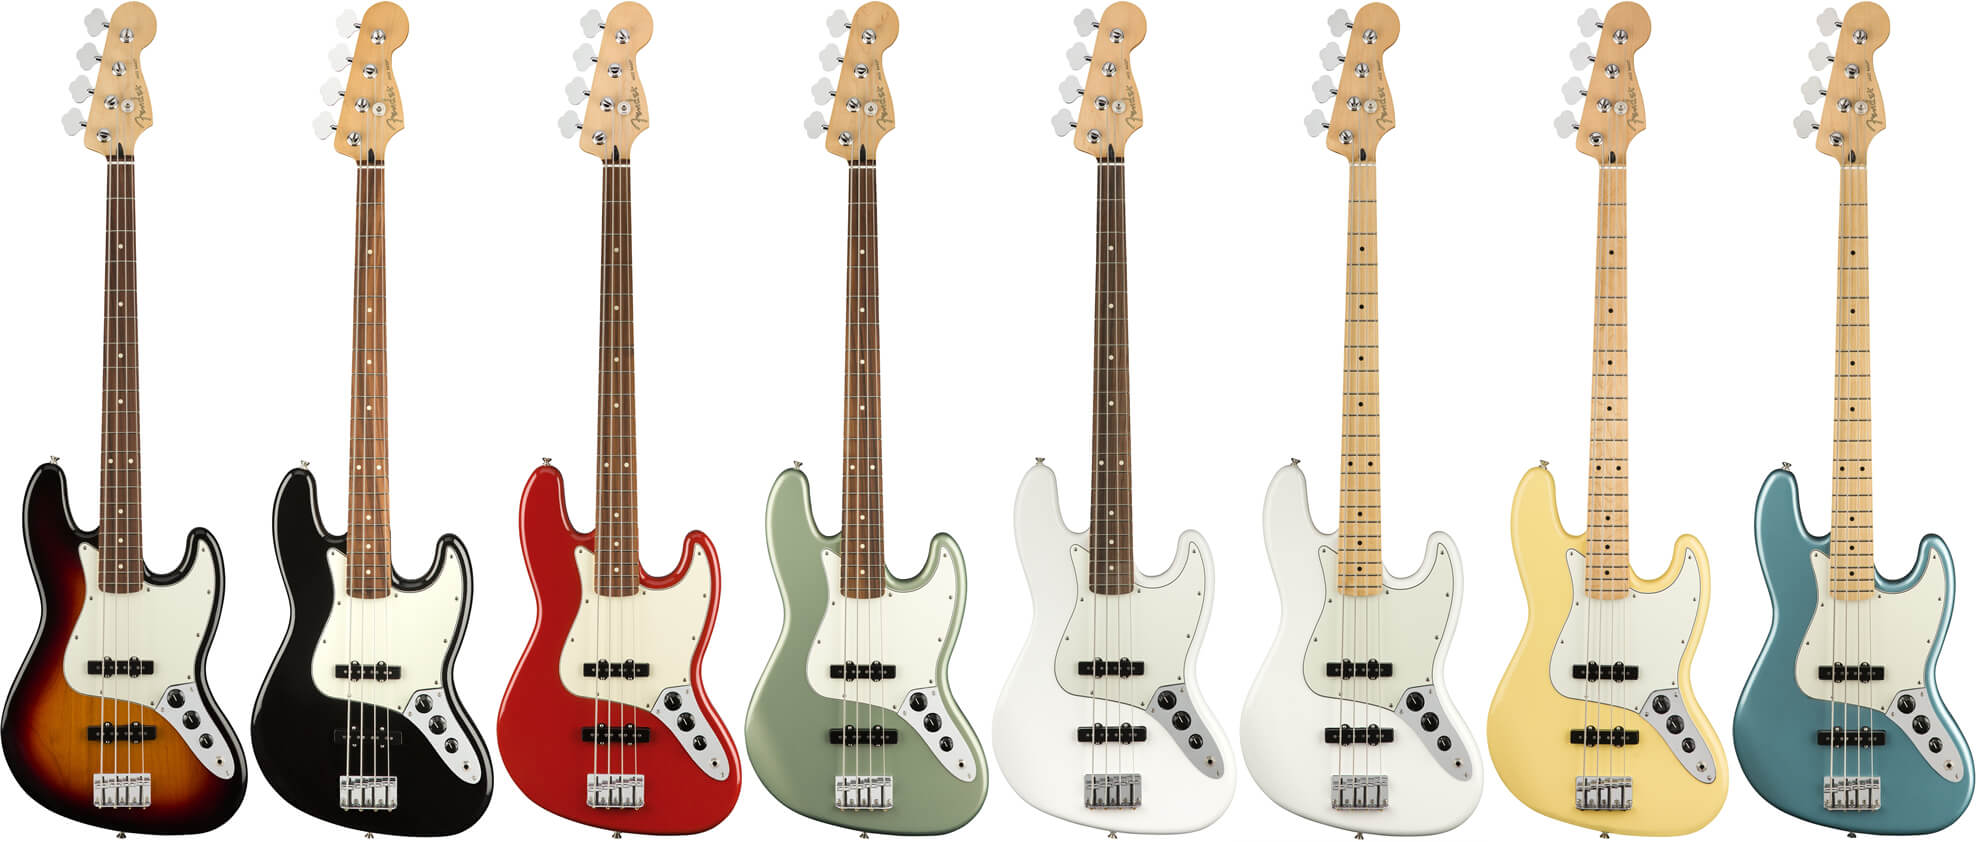 Fender Player Series Jazz Bass